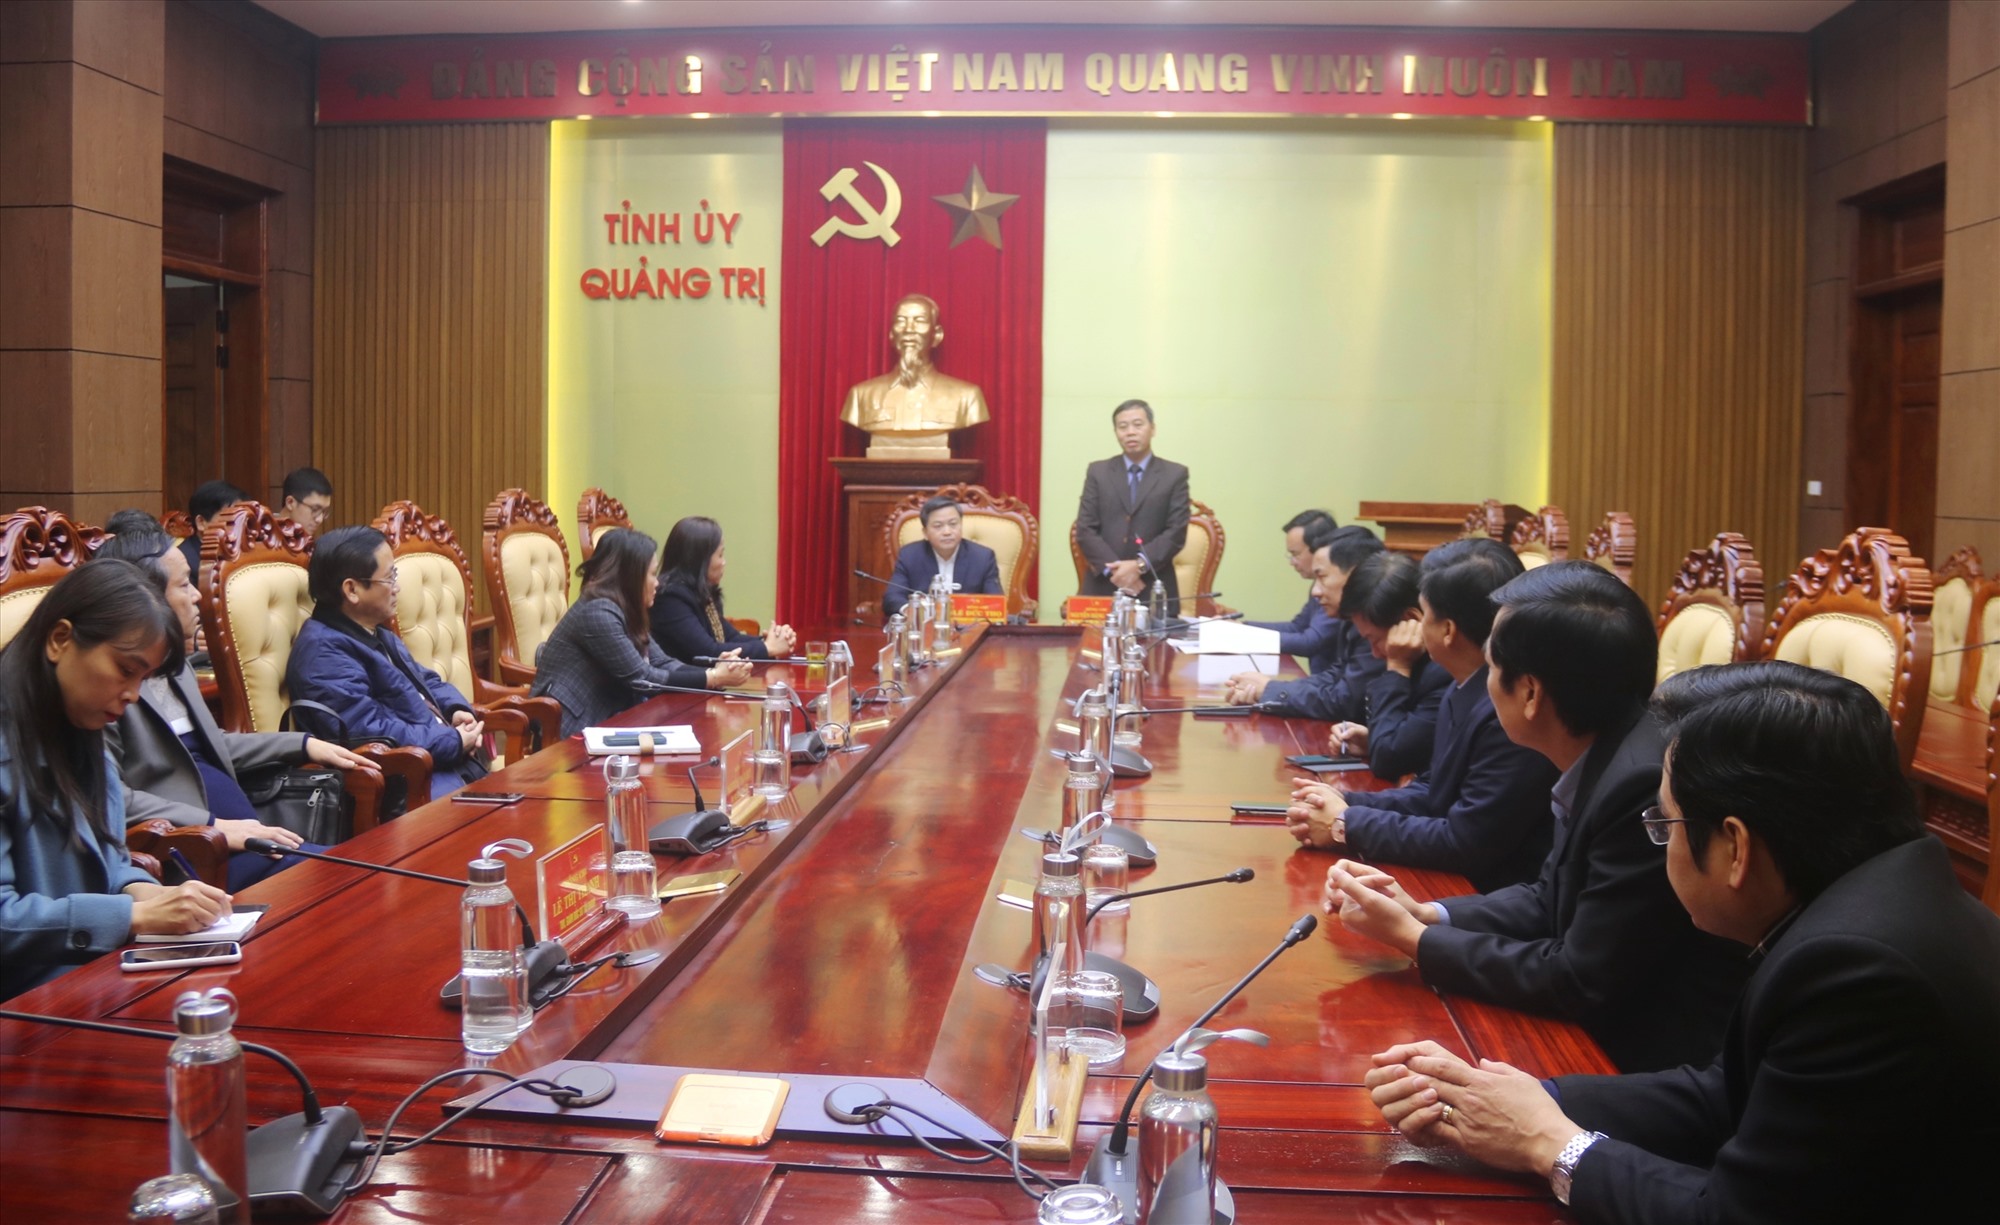 Phó Bí thư Thường trực Tỉnh uỷ Nguyễn Đăng Quang ghi nhận và đánh giá cao sự đóng góp của VietinBank trong các hoạt an sinh xã hội trên địa bàn tỉnh - Ảnh: N.B